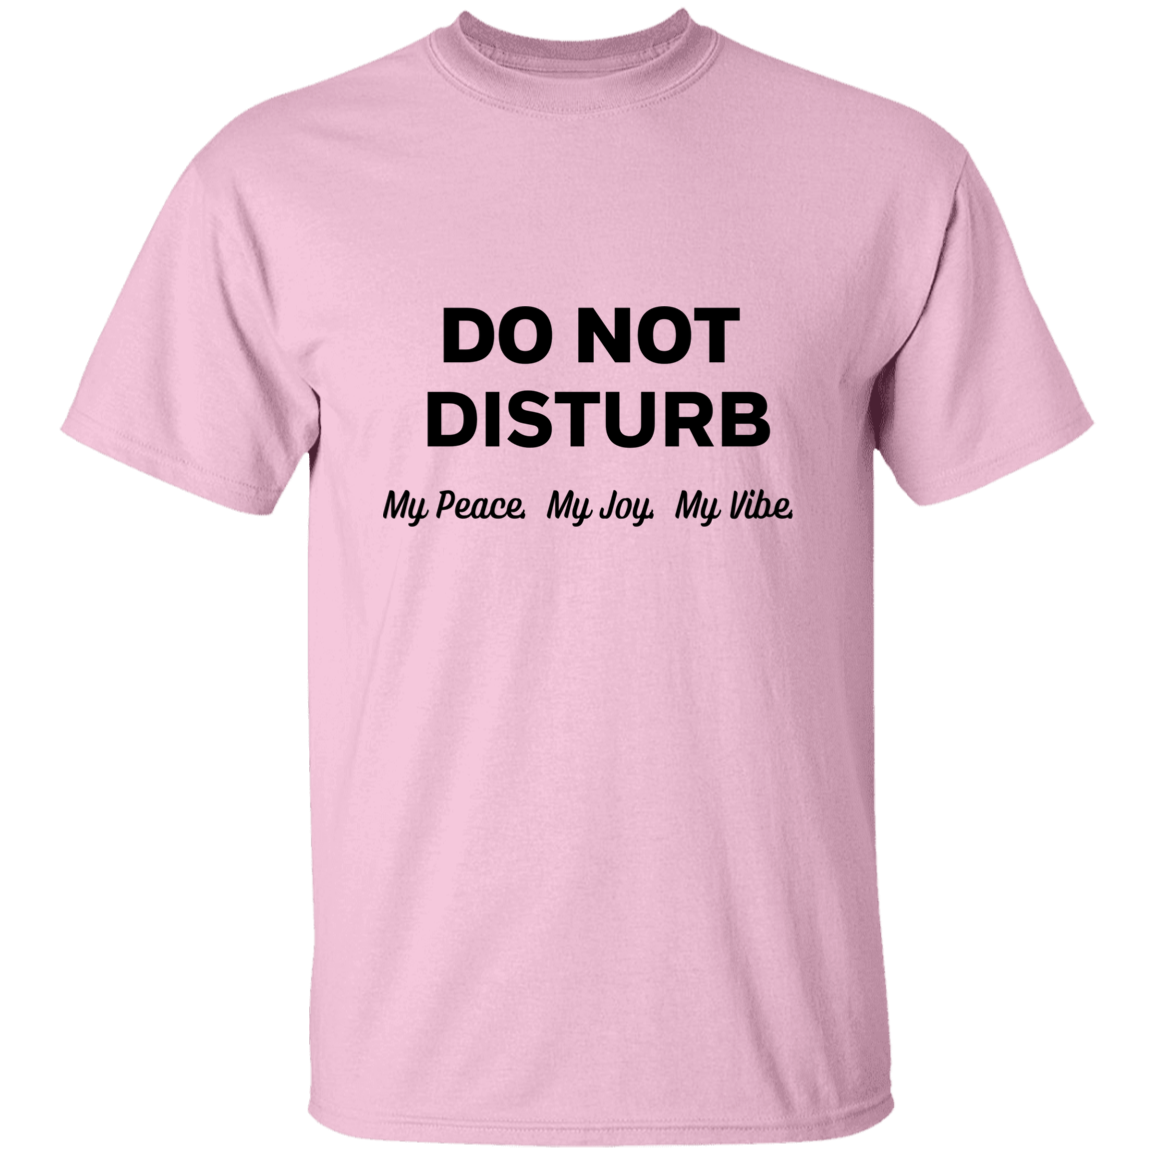 Do Not Disturb 5.3 oz. T-Shirt